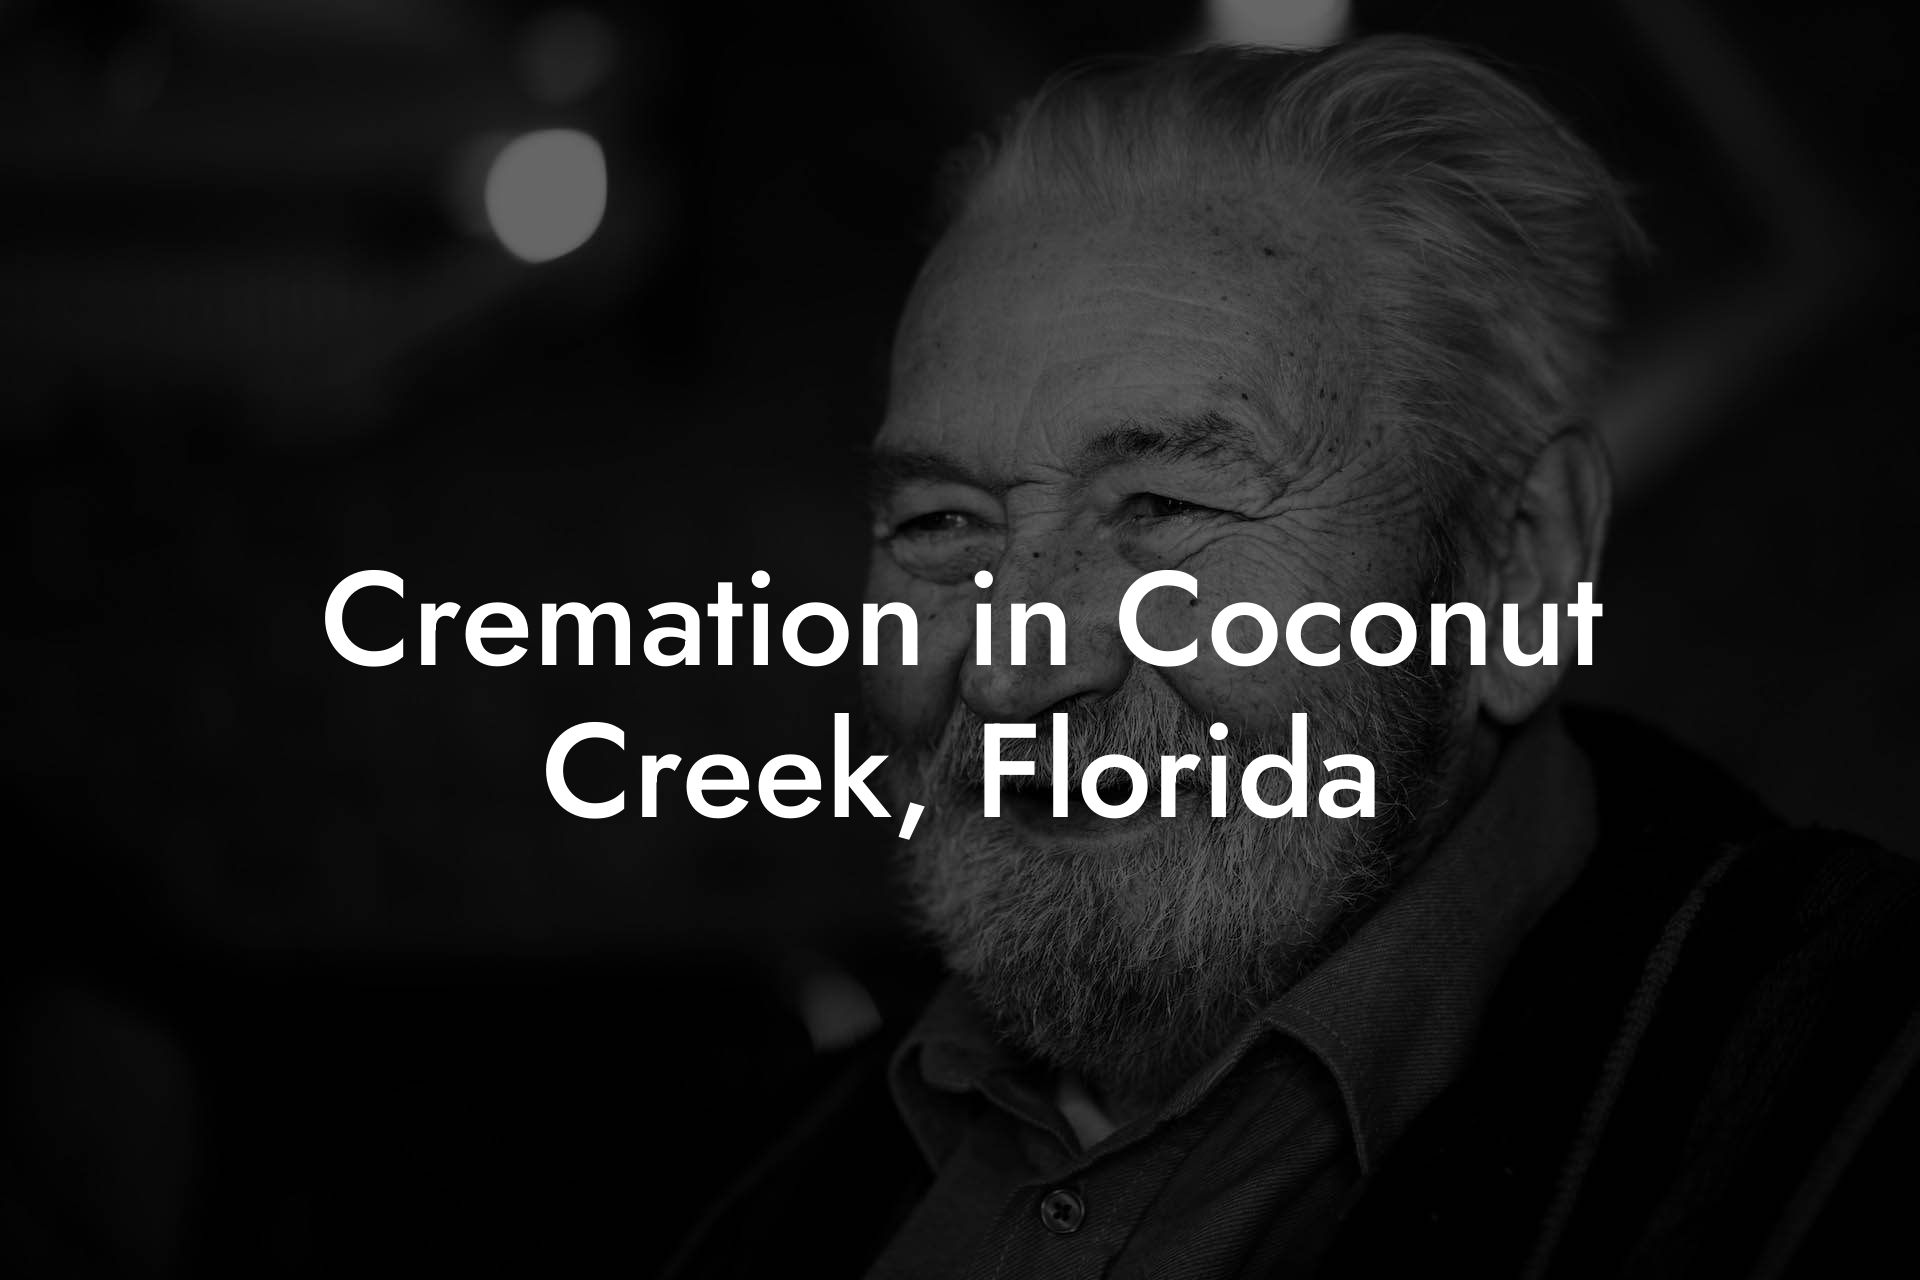 Cremation in Coconut Creek, Florida